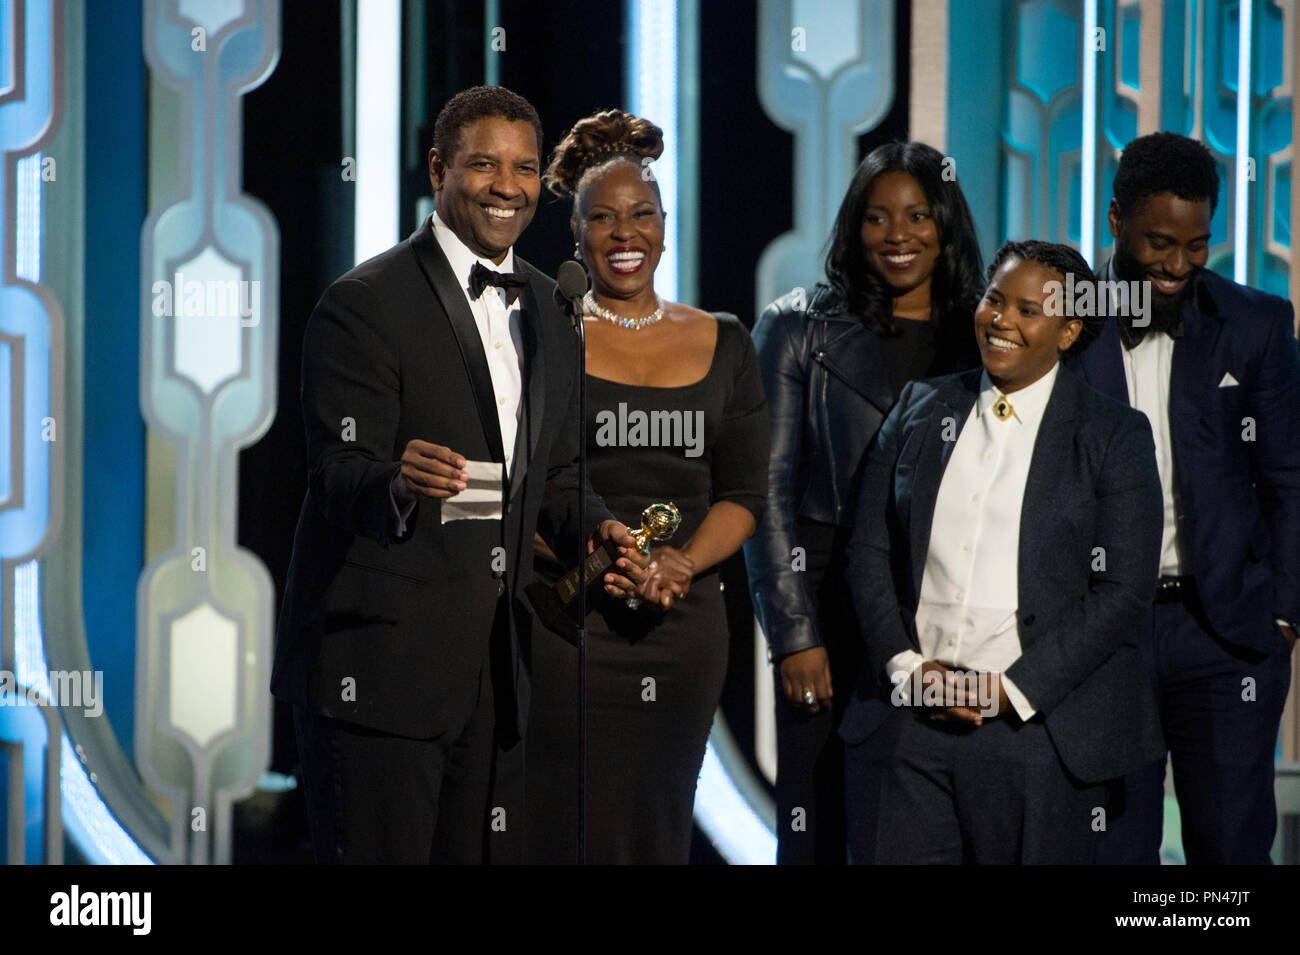 Denzel Washington acepta el premio Cecil B. DeMille por su "destacada contribución al campo del entretenimiento" en la 73ª Anual de los Golden Globe Awards en el Beverly Hilton de Beverly Hills, California, el 10 de enero de 2016. Foto de stock